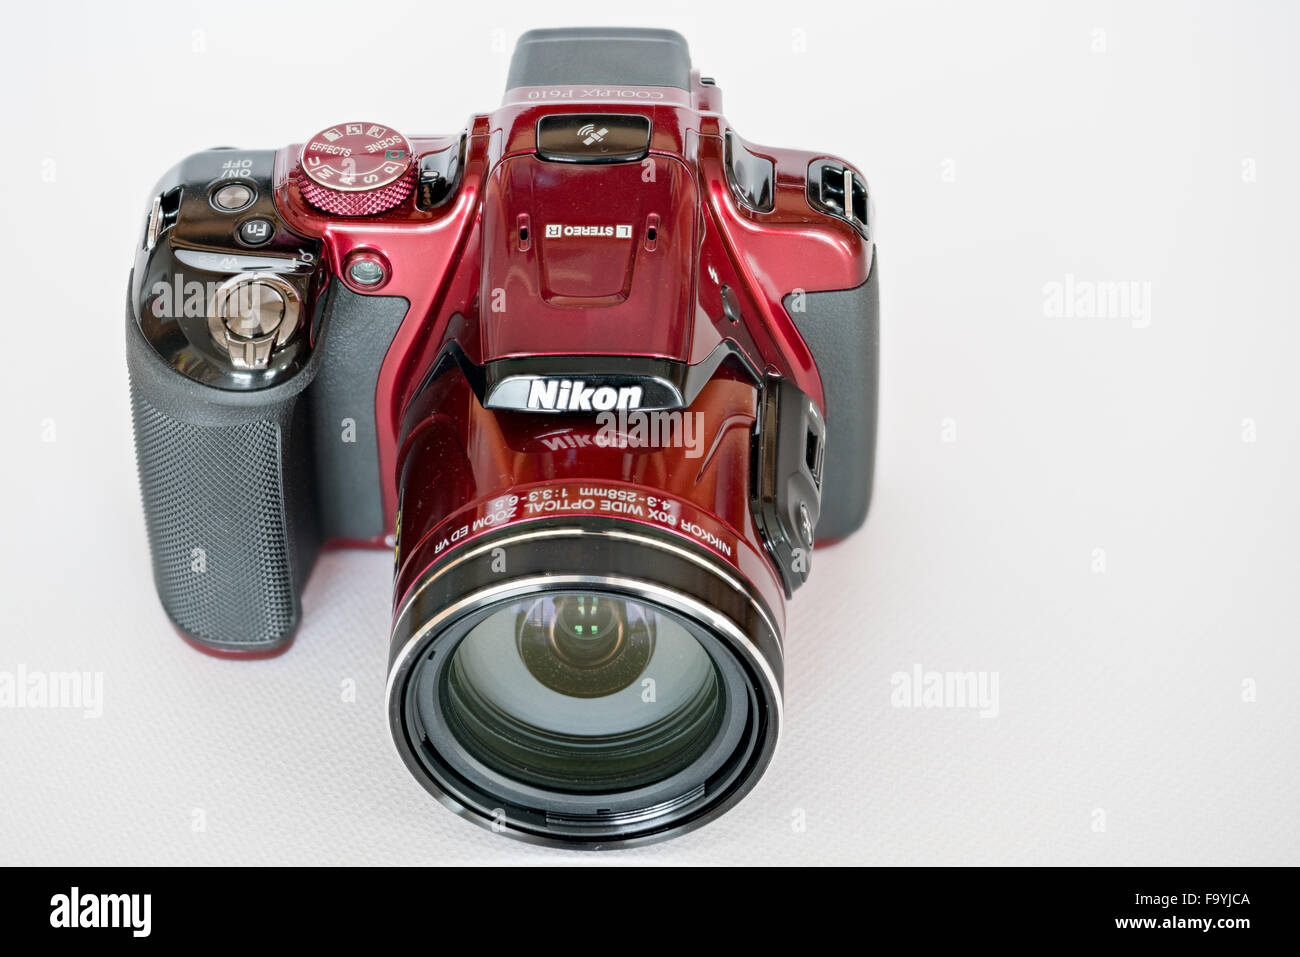 カメラ デジタルカメラ Nikon coolpix camera hi-res stock photography and images - Alamy